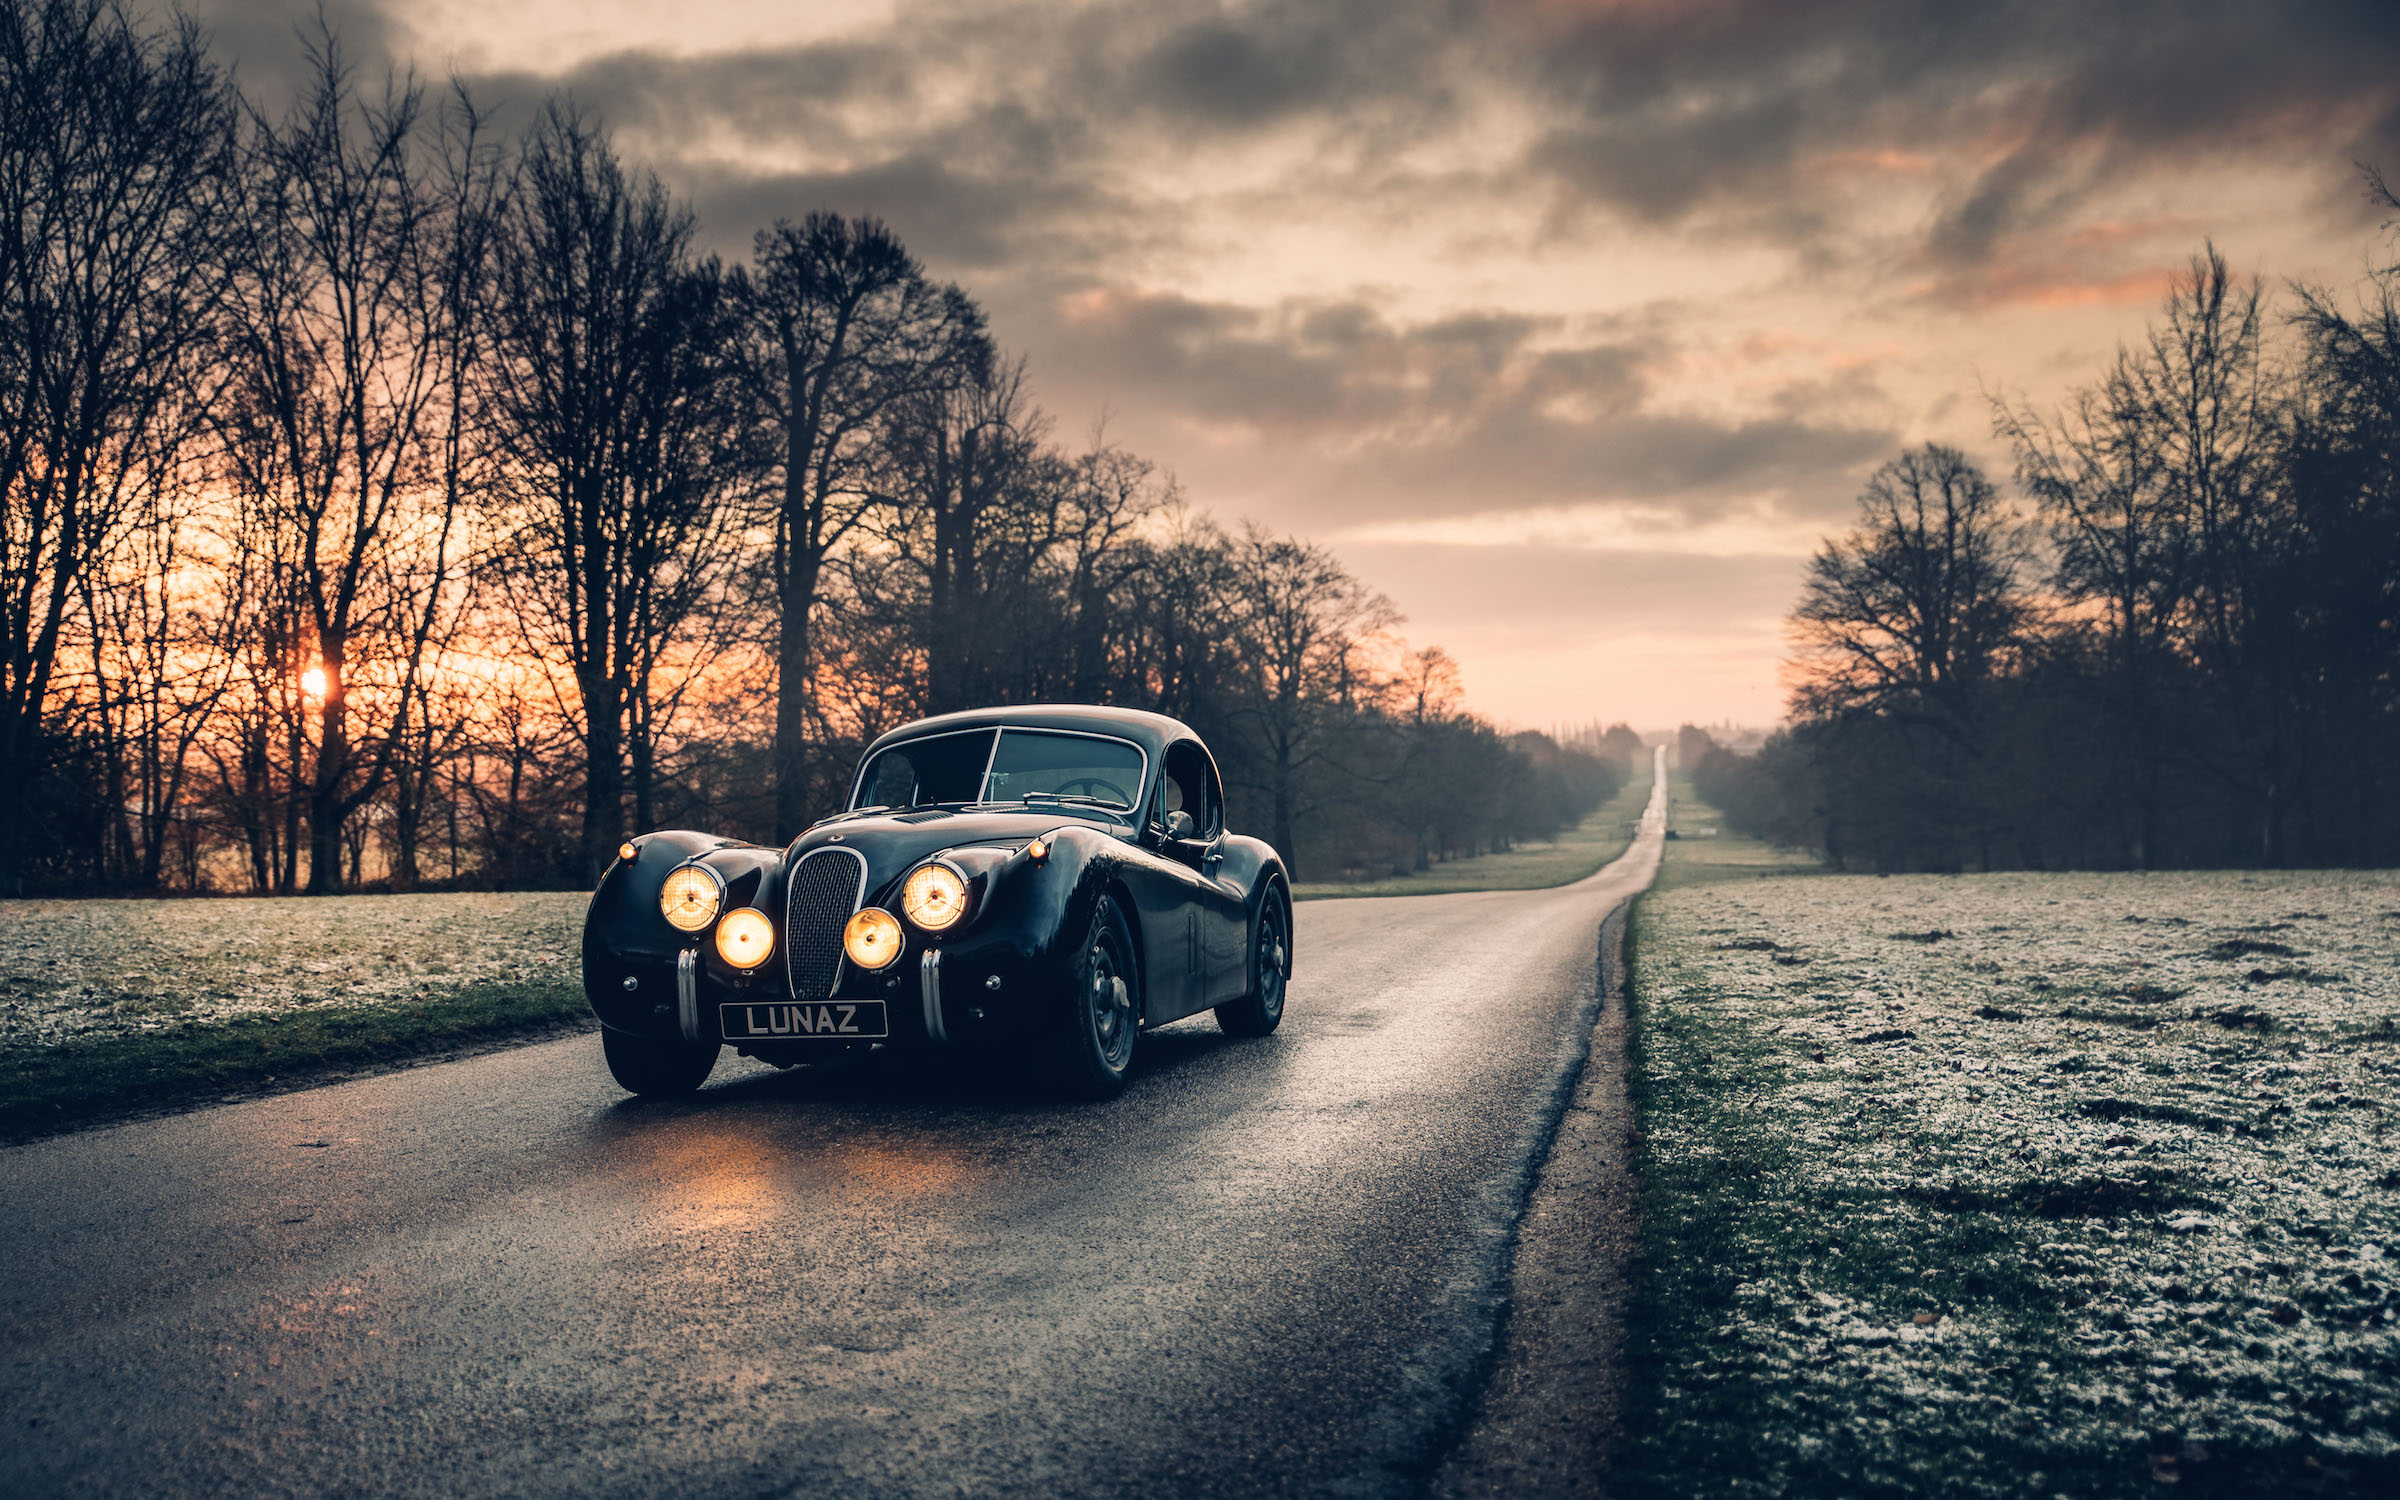 Electric classic cars: Lunaz reveals Rolls-Royce and Jaguar conversions